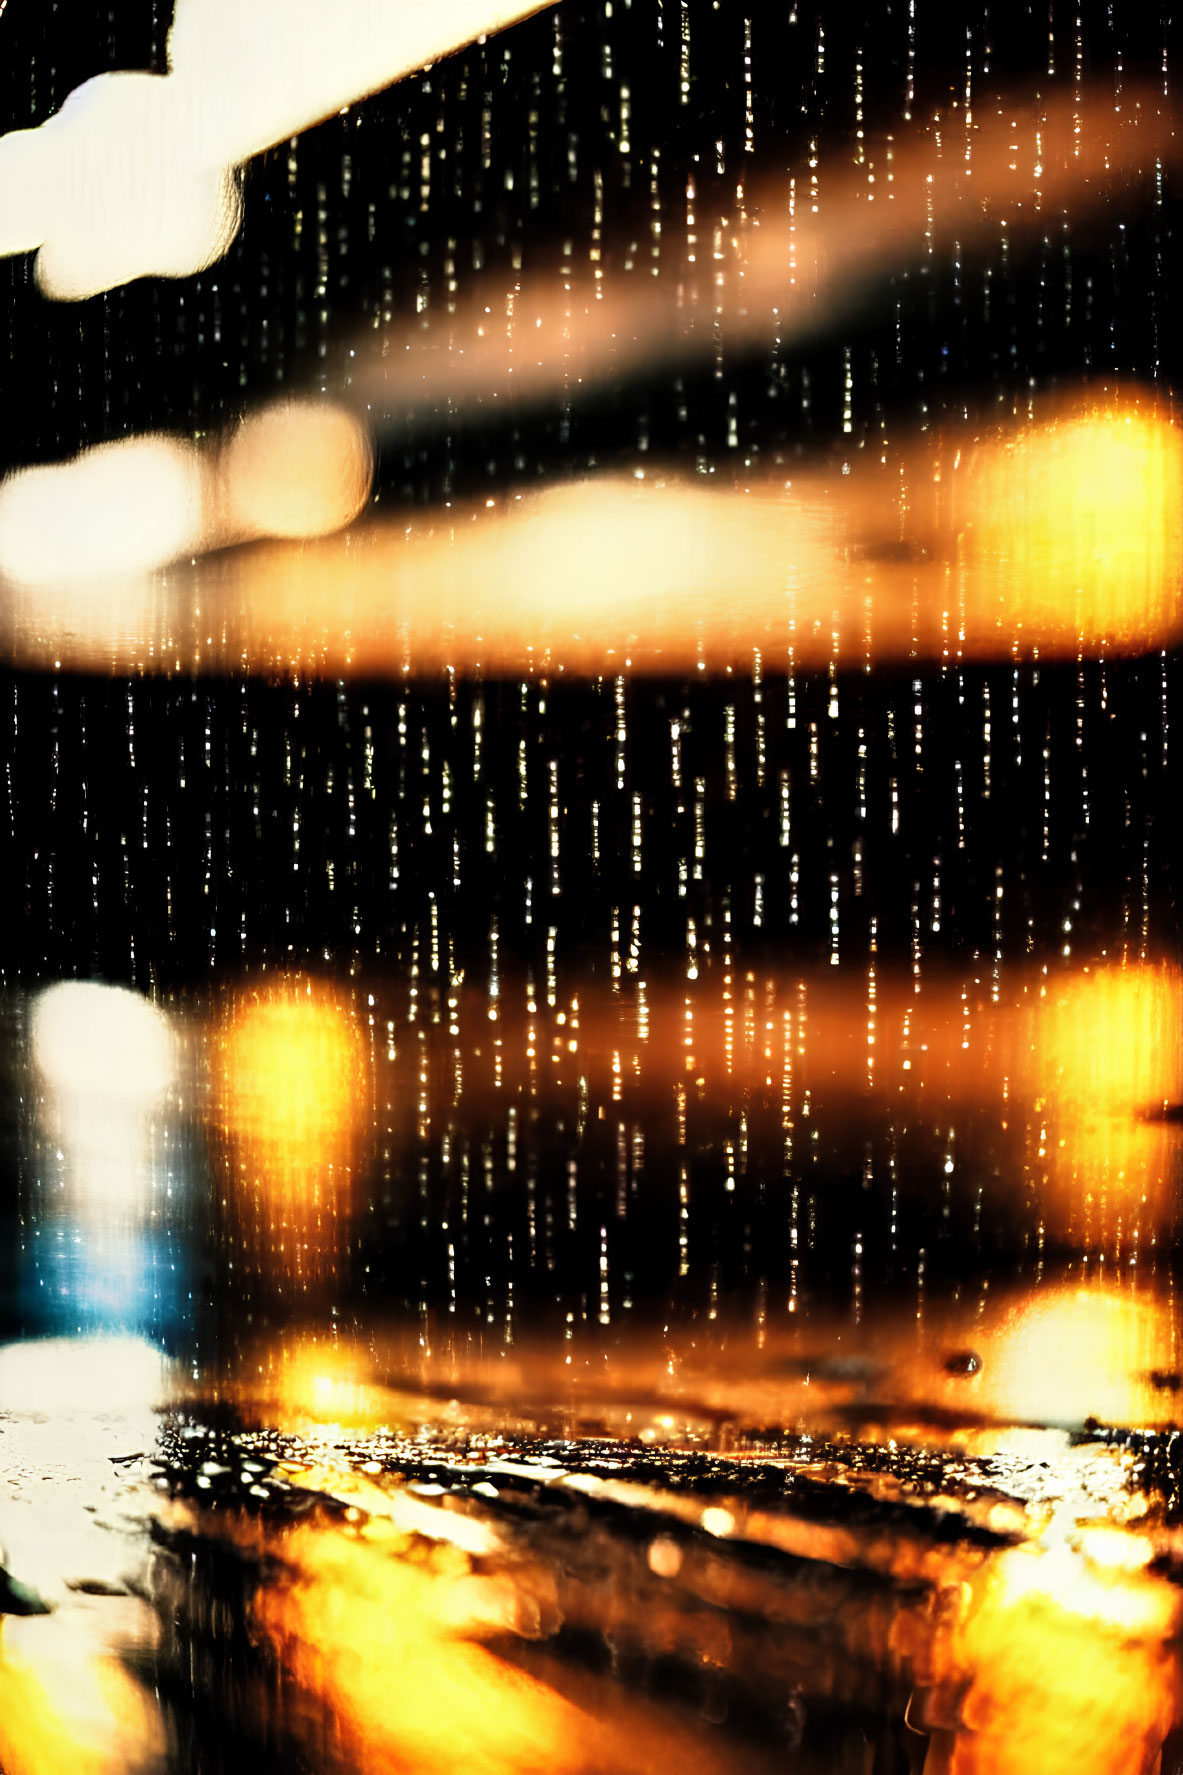 Raindrops streak down window with warm golden lights, creating cozy bokeh.